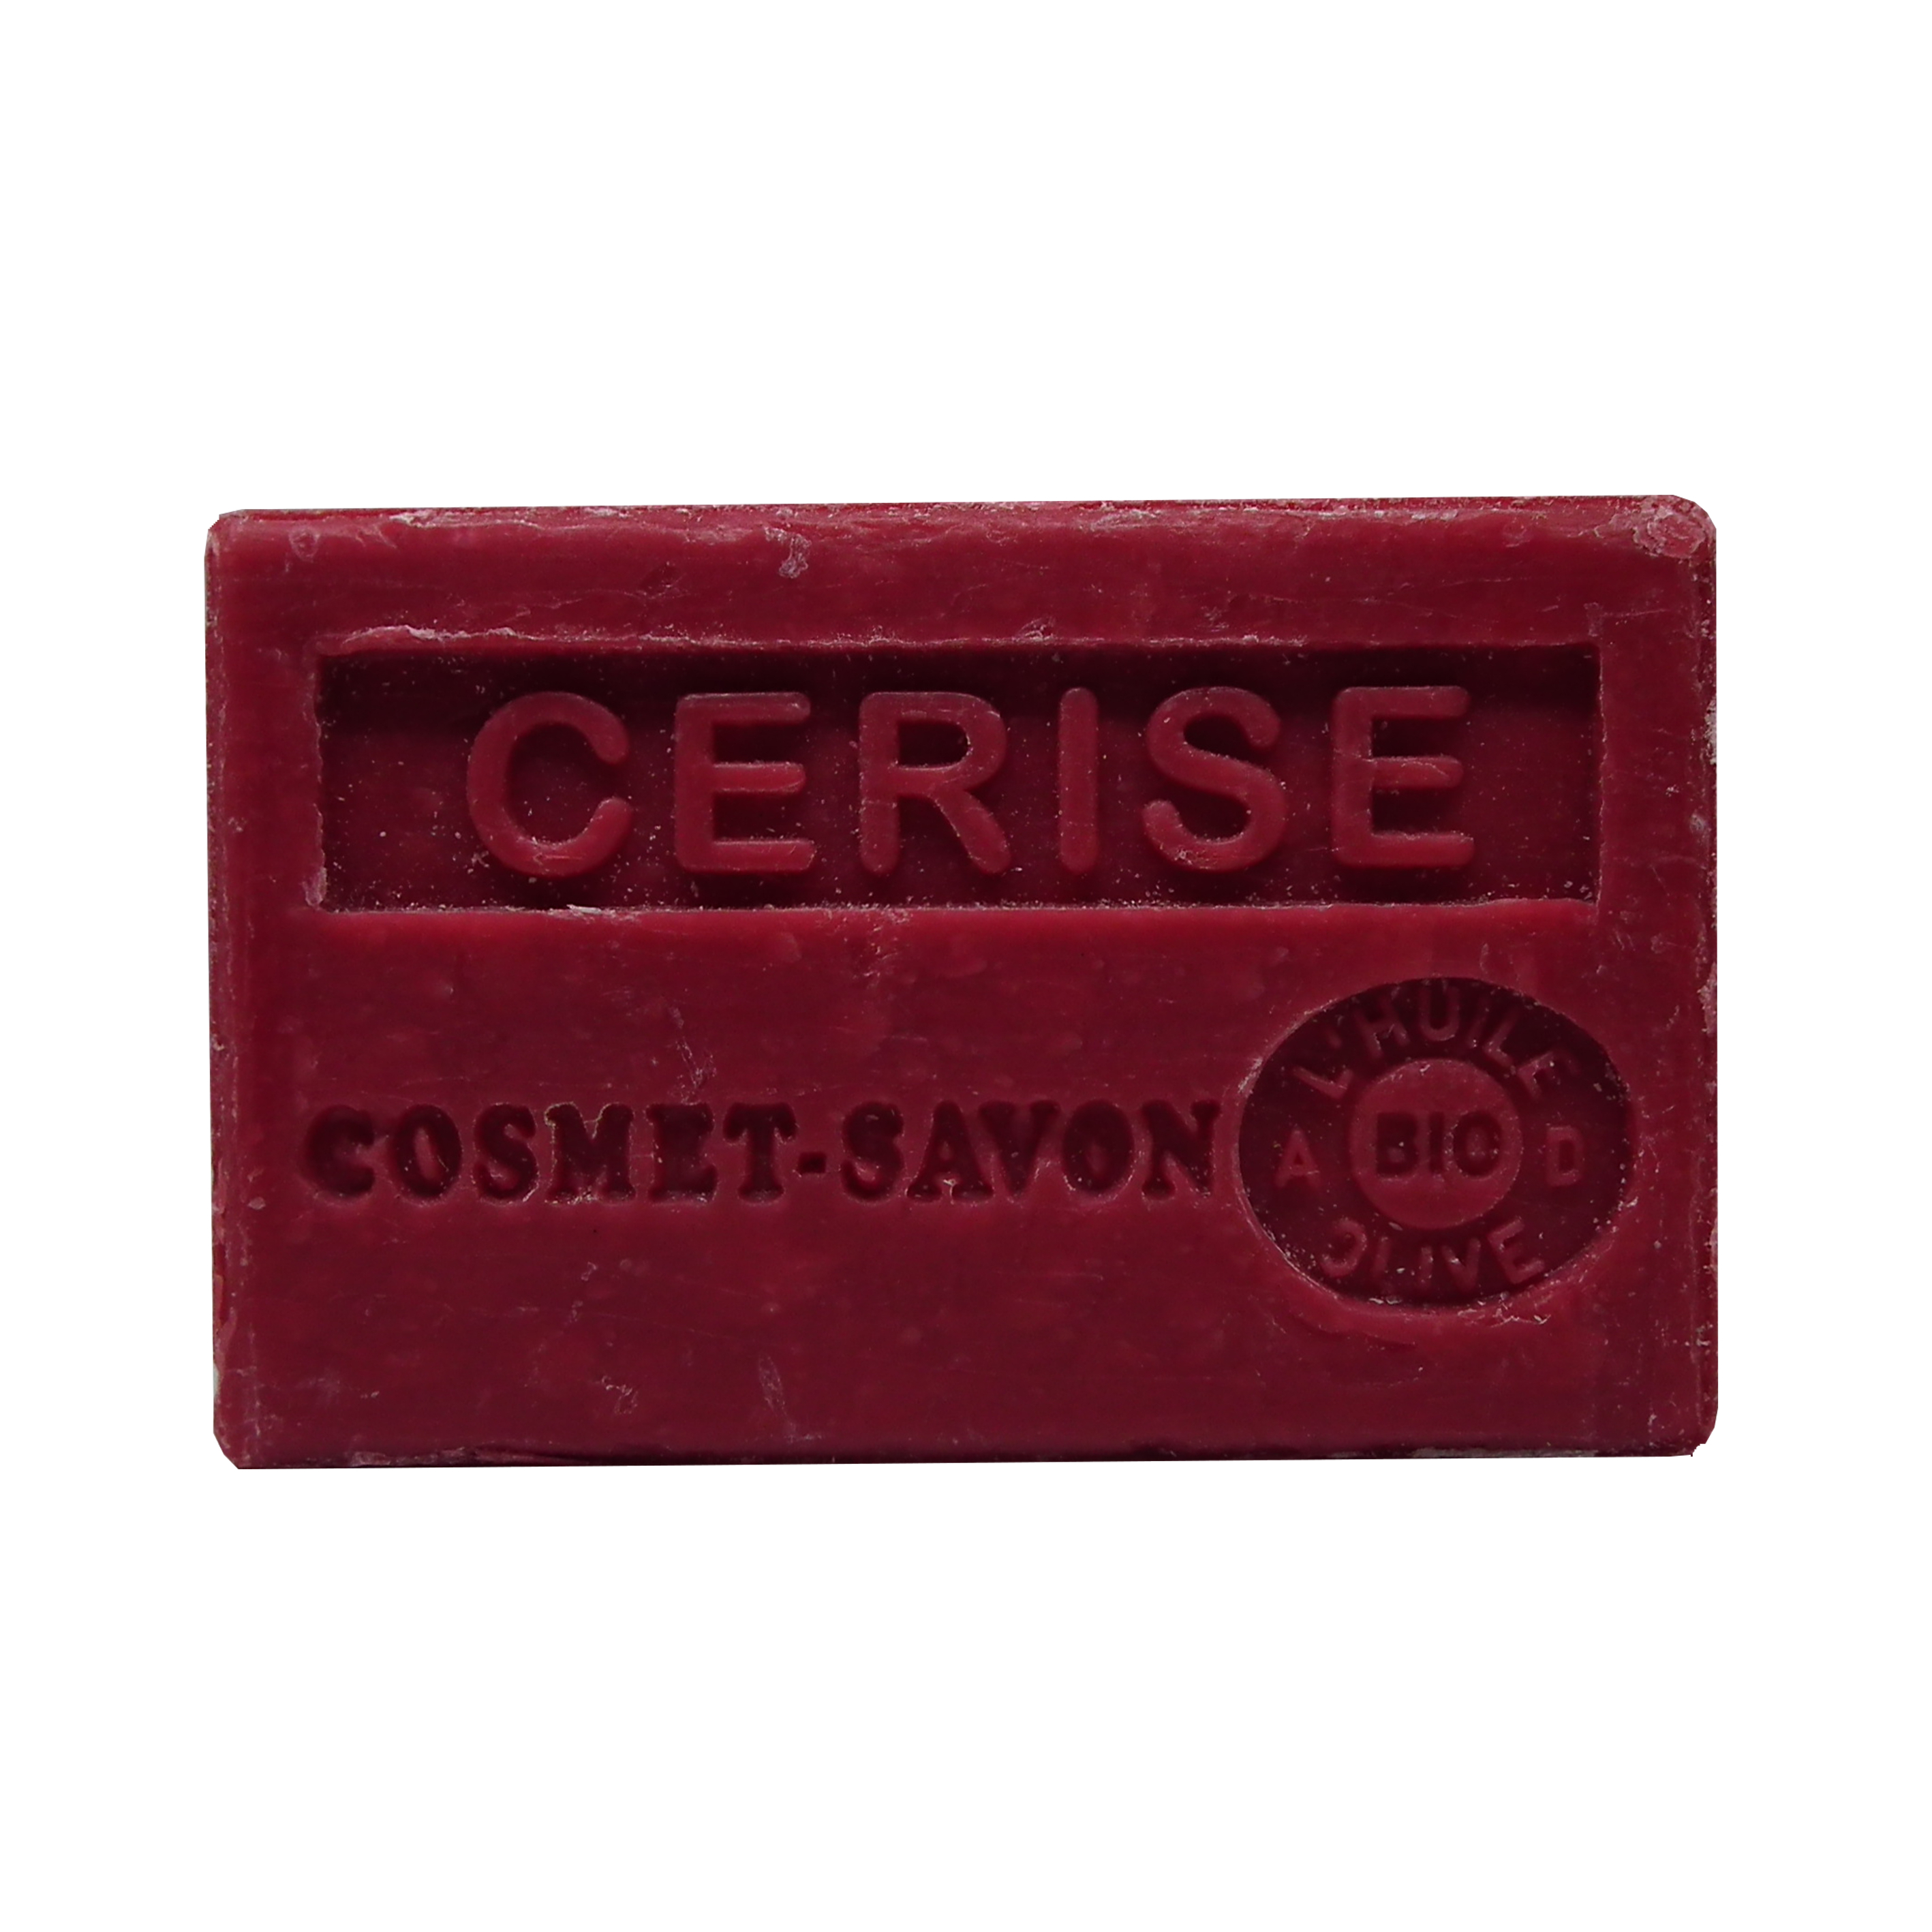 cerise-savon-125gr-au-beurre-de-karite-bio-cosmet-savon-3665205006188-face-JPEG